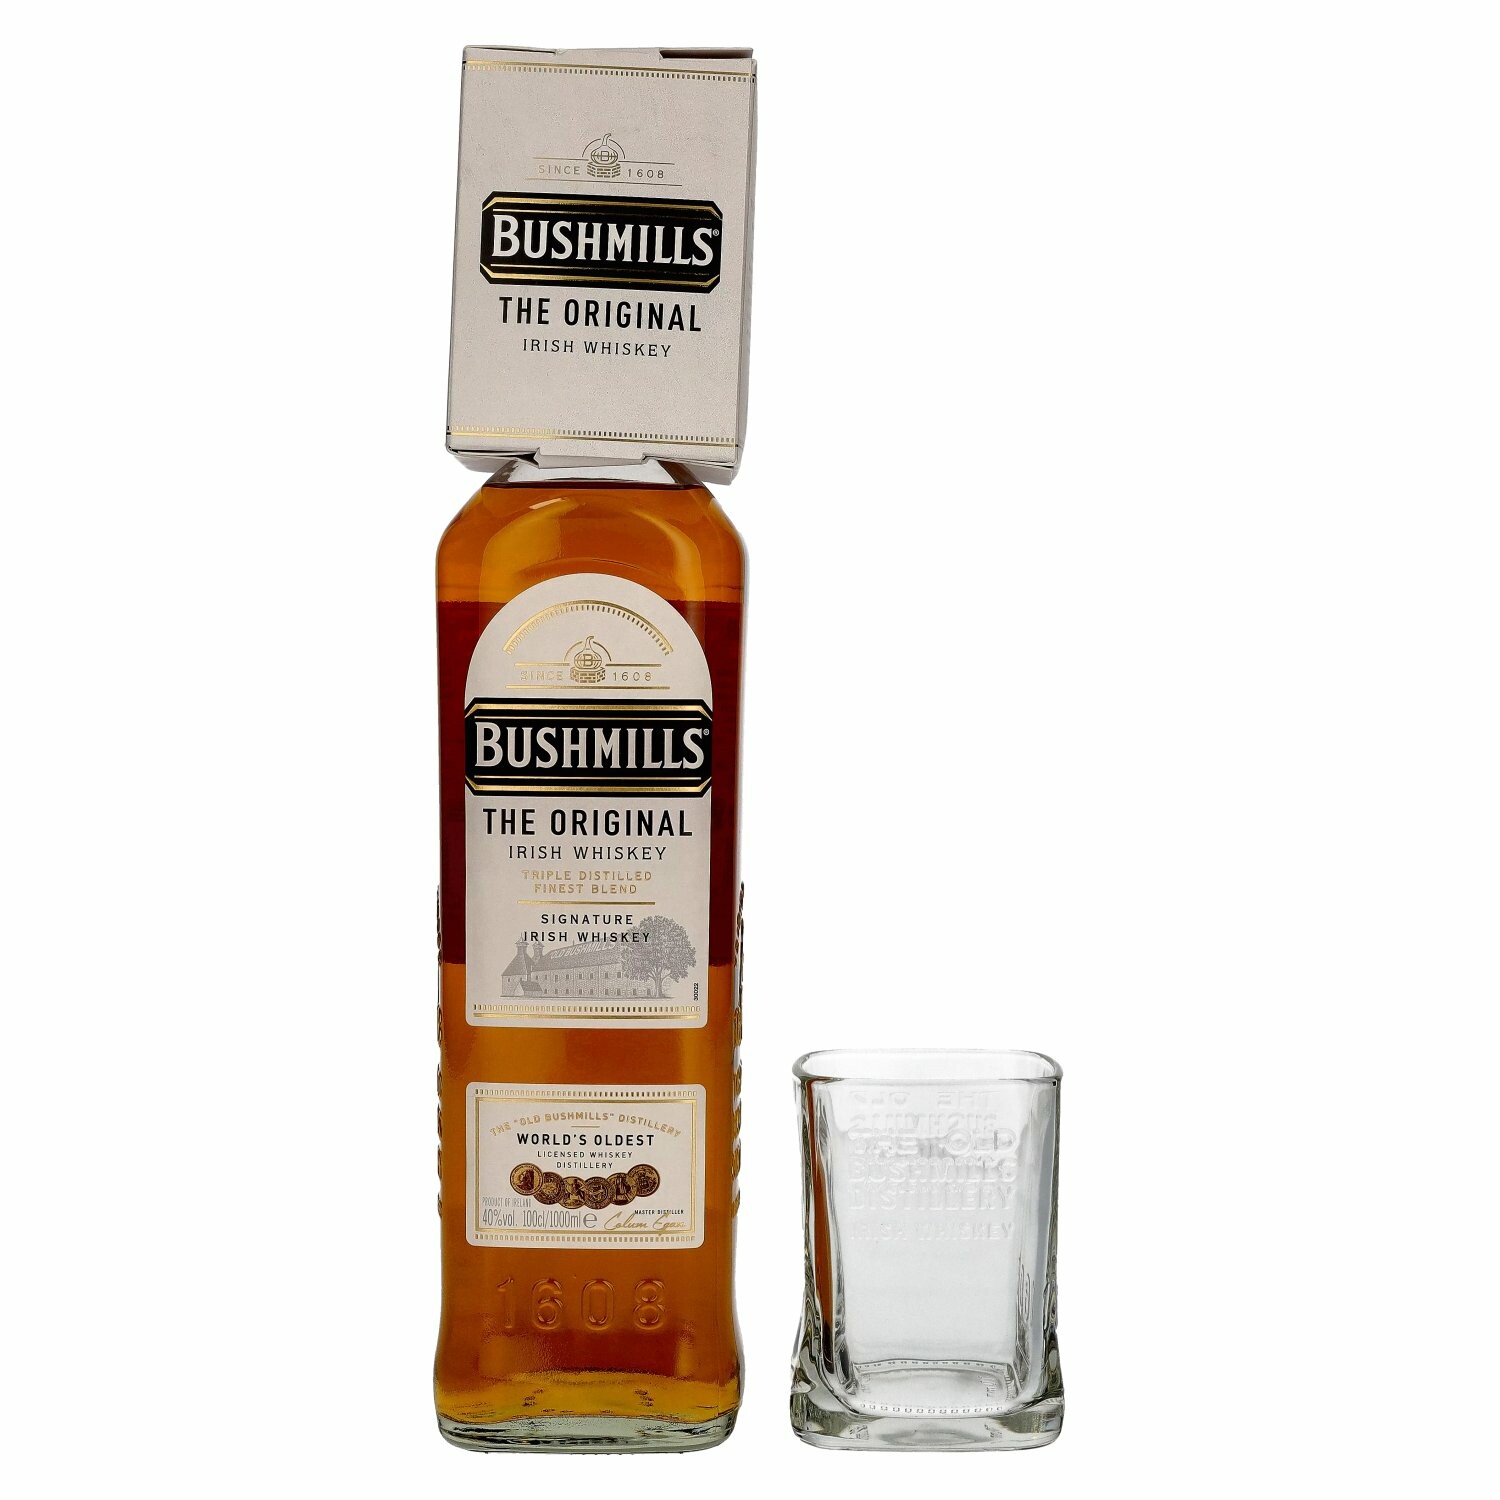 Bushmills Triple Distilled Original Irish Whiskey 40% Vol. 1l with glass